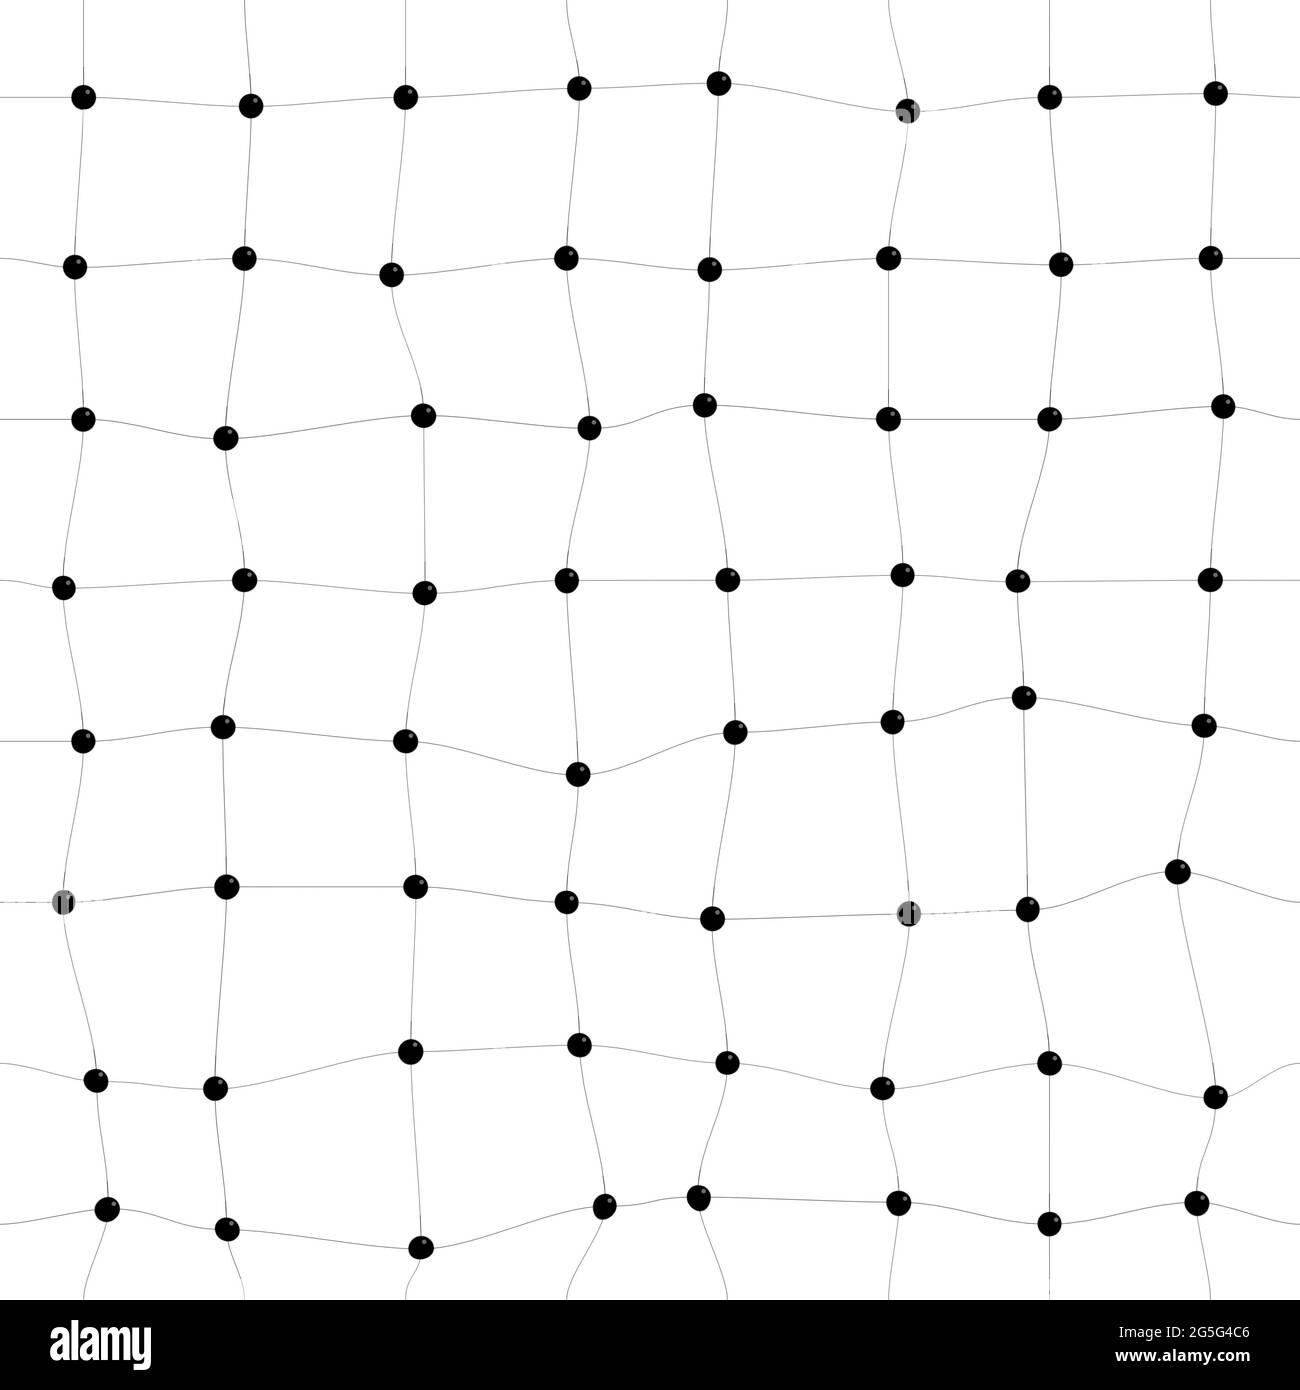 Quadratisches, verdrehtes Muster oder Raster aus schwarzen Punkten und Linien auf Weiß. Abstrakte Verbindung, Chemie, Daten und Molekülhintergrund, nahtloses Muster. Stockfoto